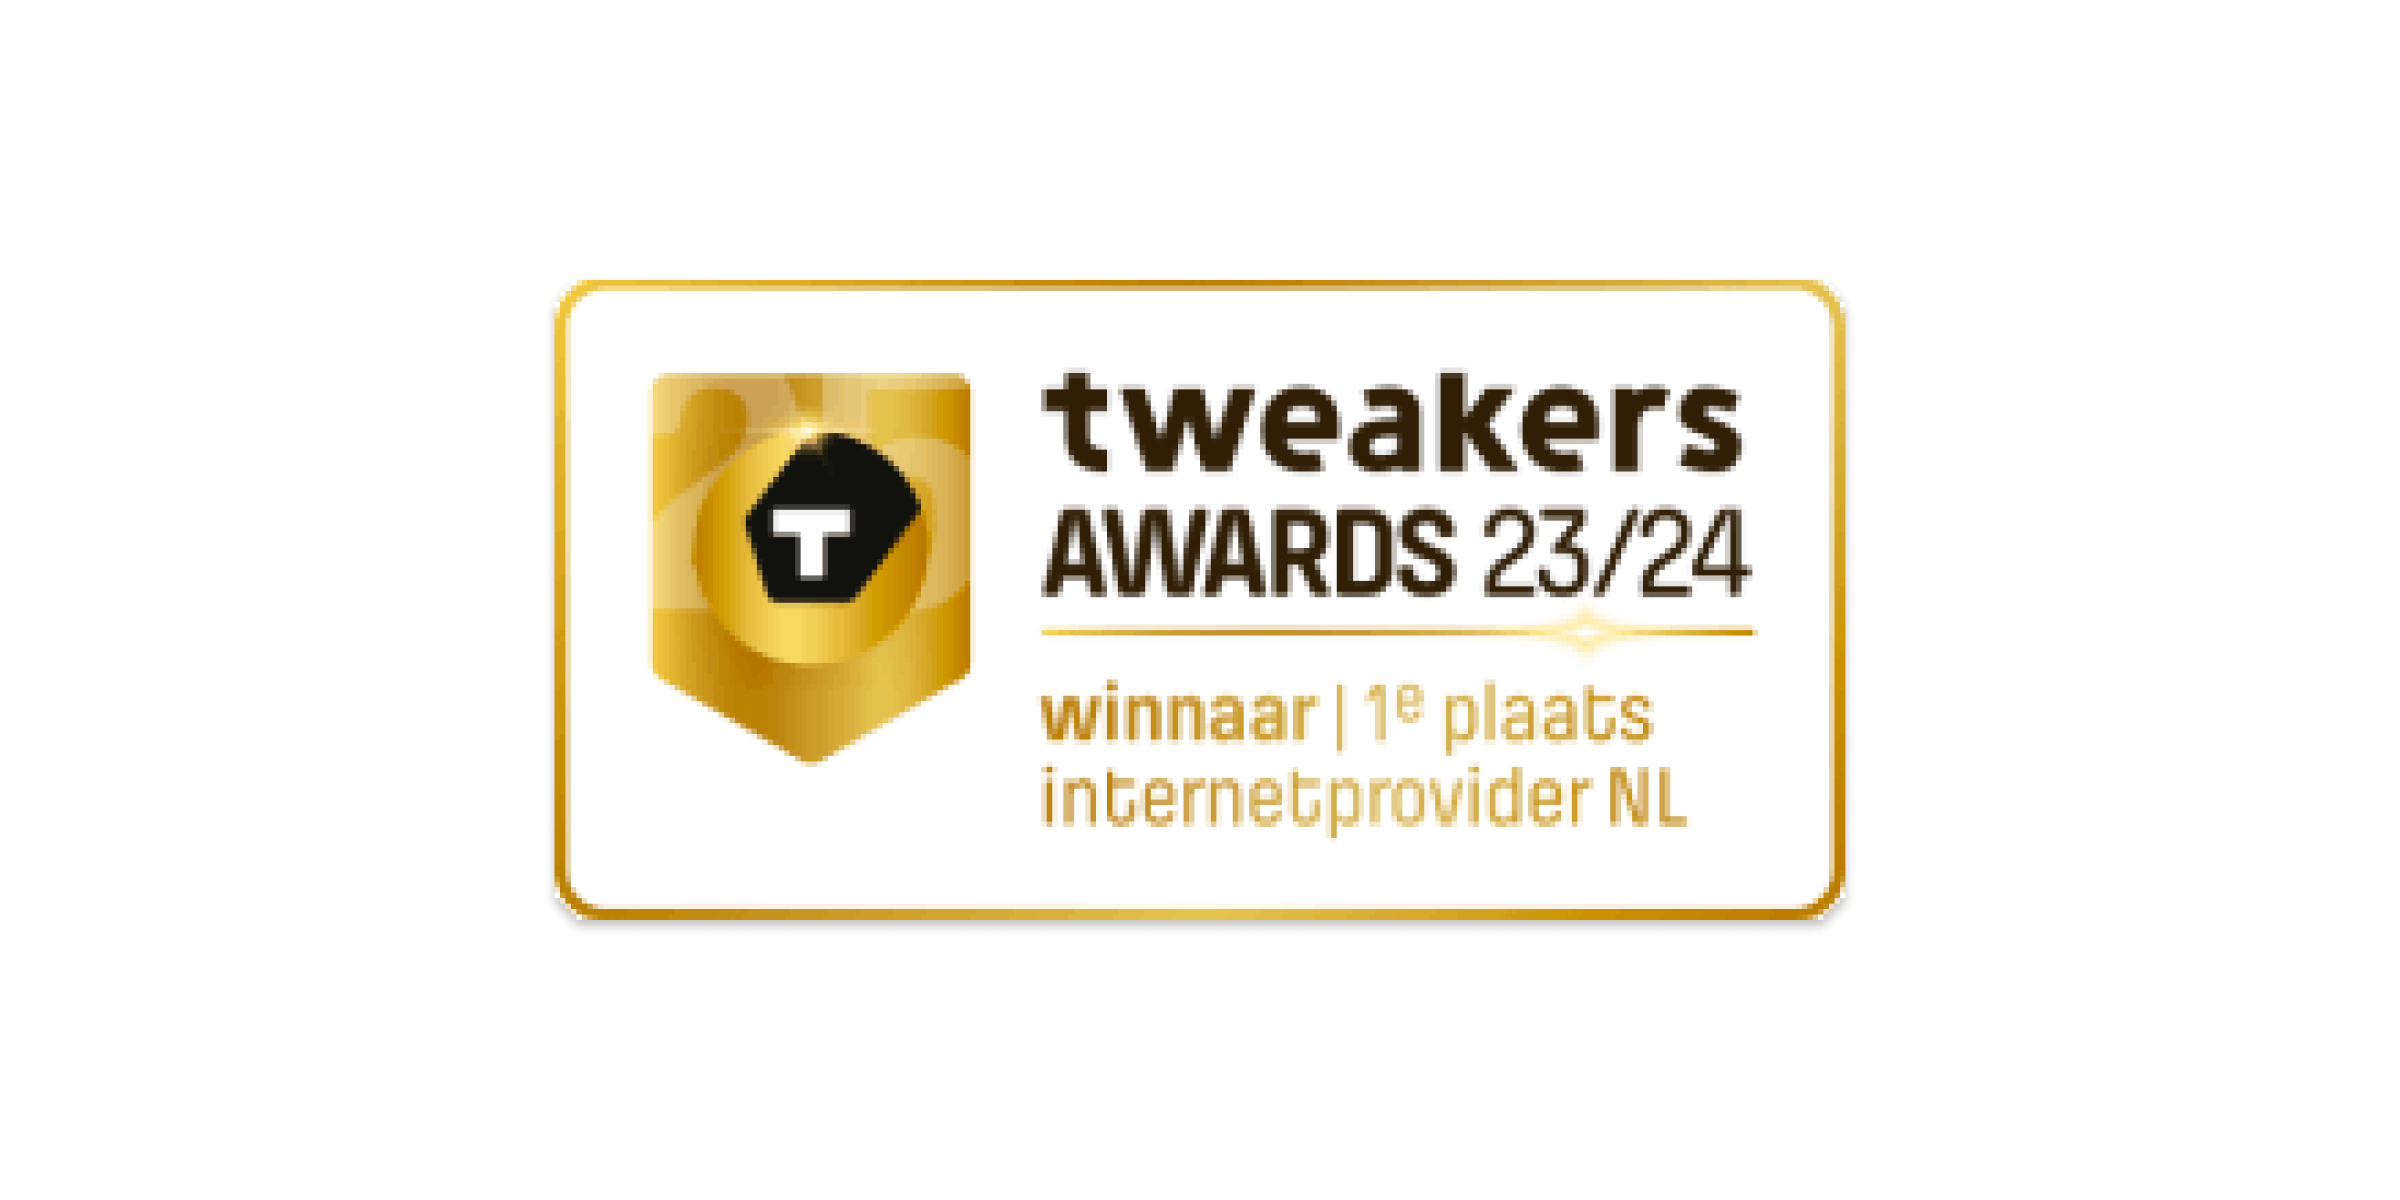 Tweakers awards 23/24 winnaar 1e plaats internetprovider NL